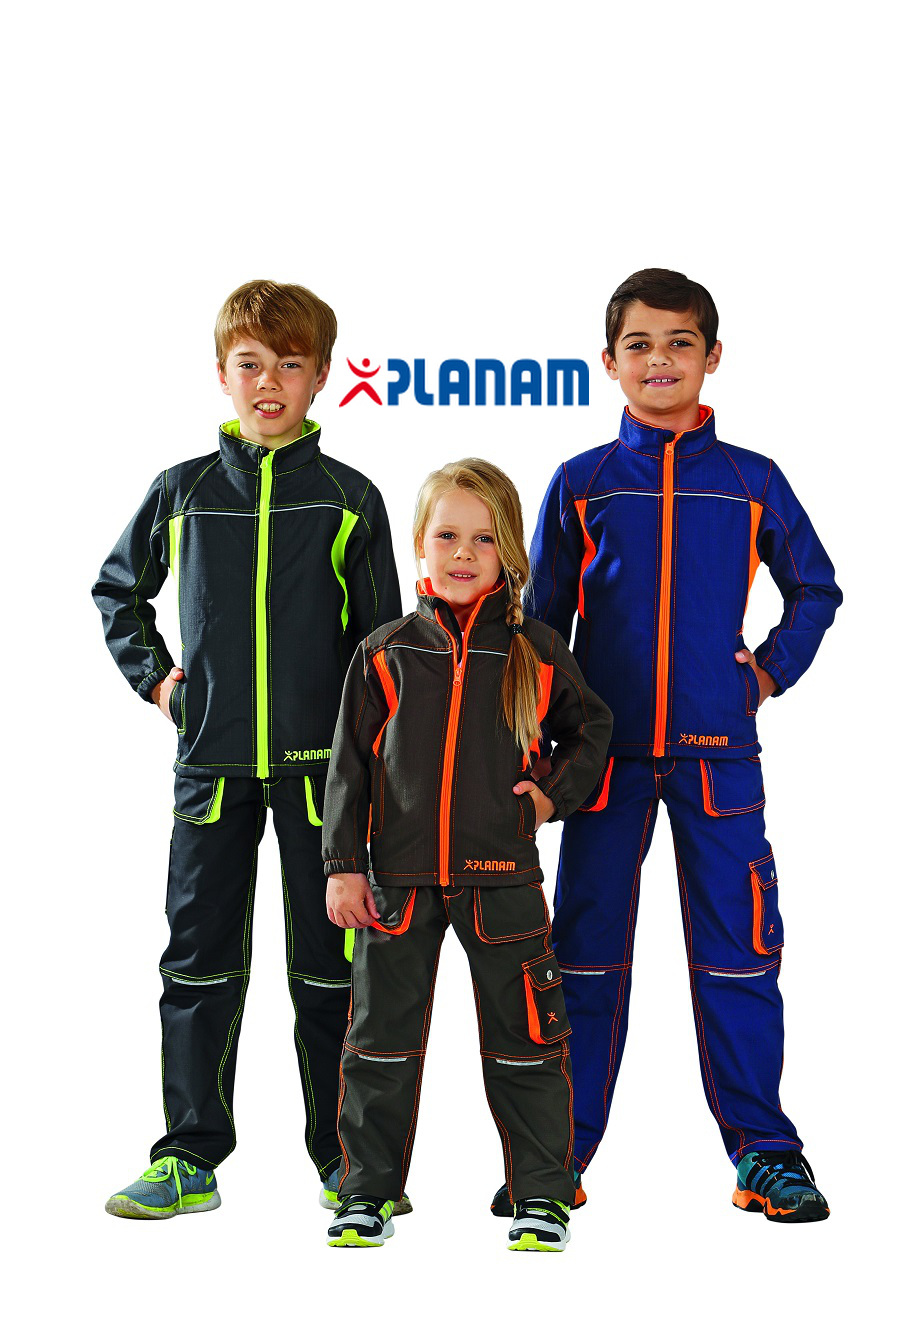 Planam Junior Kinder-Softshelljacke Größe 86 - 176, in 3 Farben